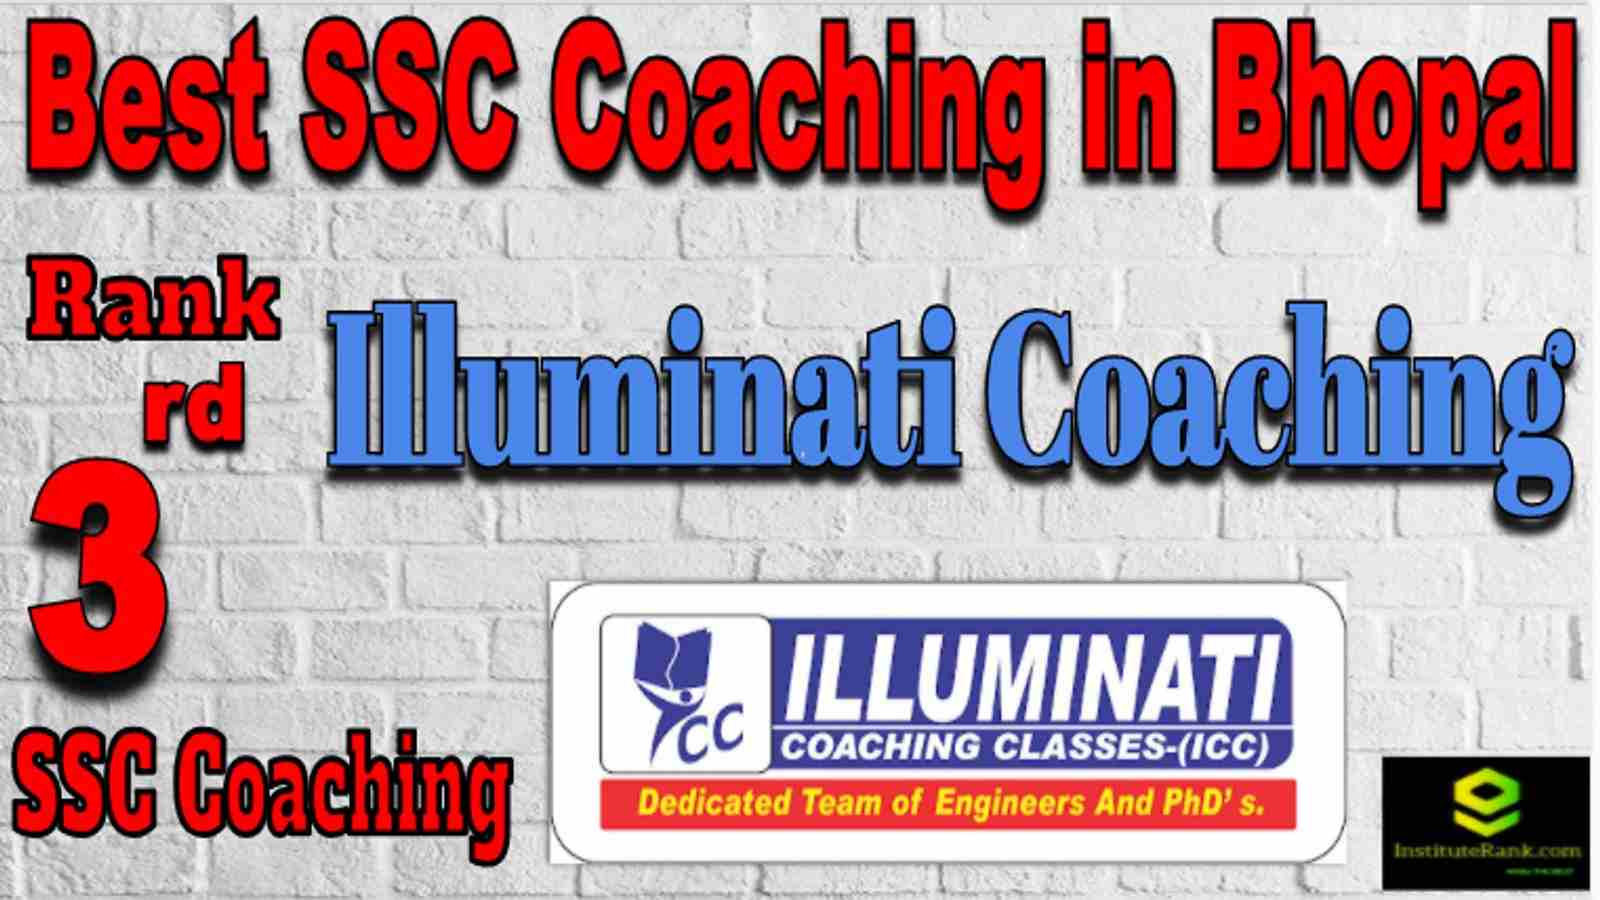 Rank 3 Best SSC Coaching in Bhopal